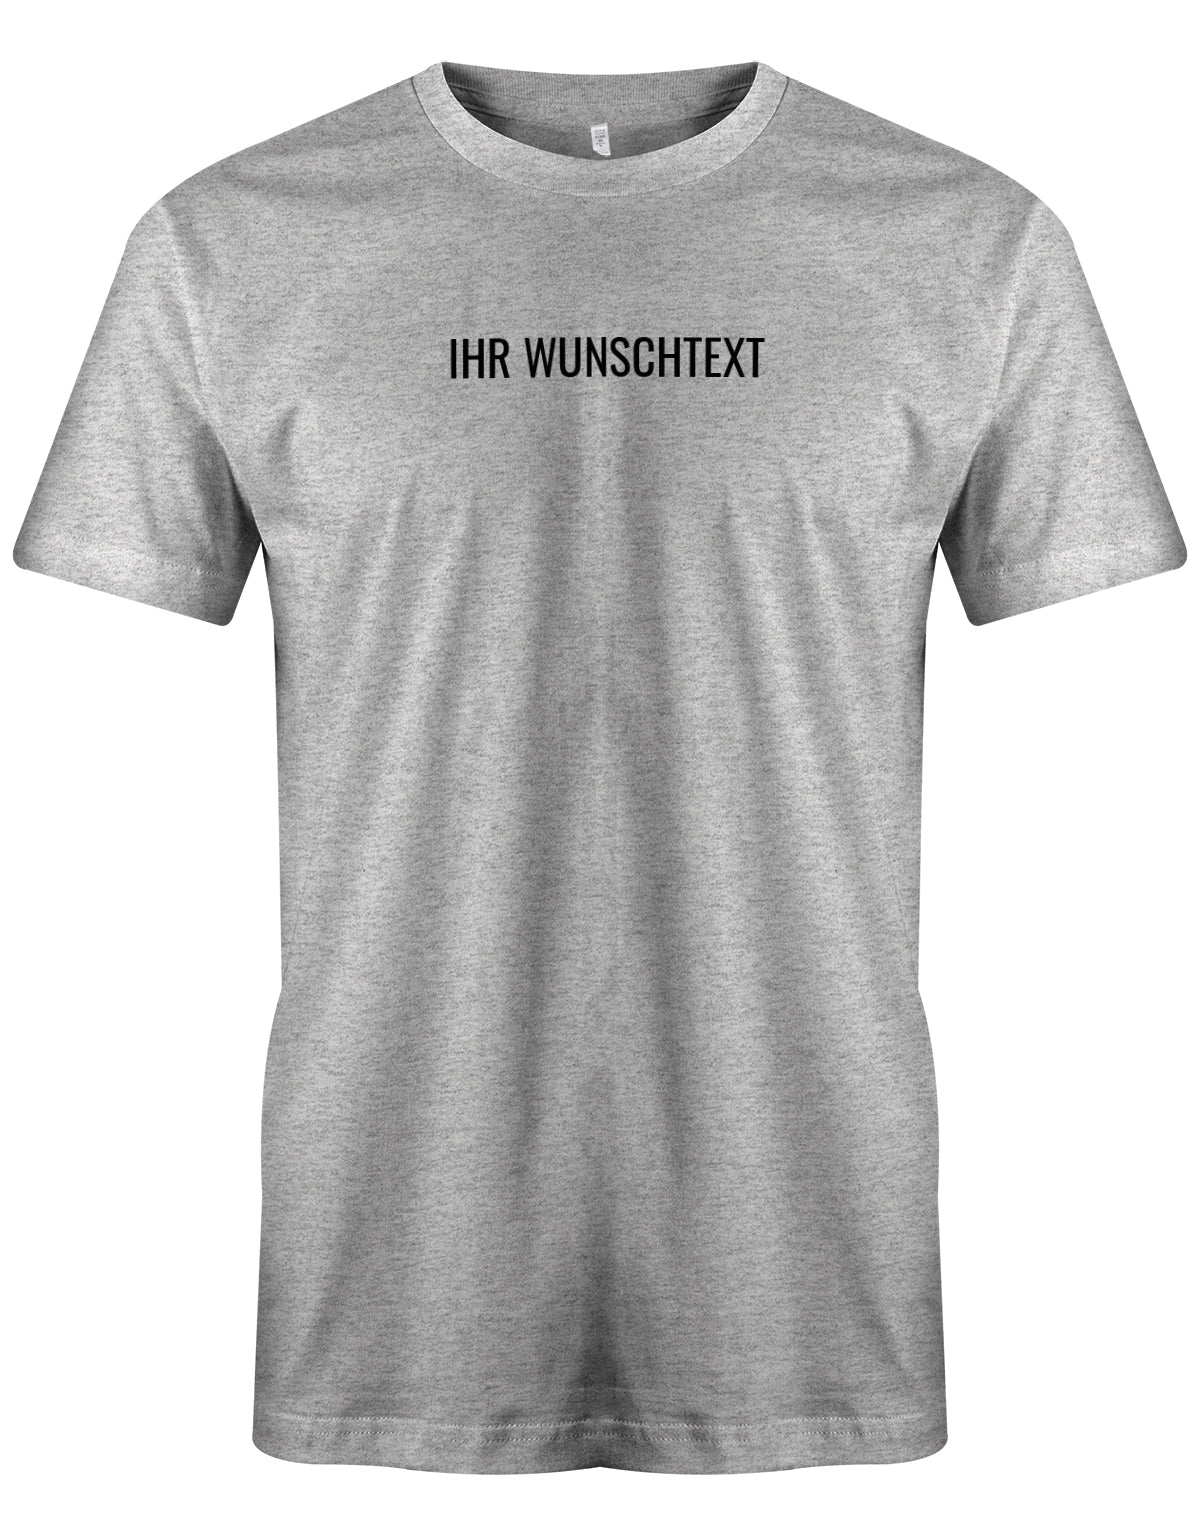 Männer Tshirt mit Wunschtext. Minimalistisches Design. Grau